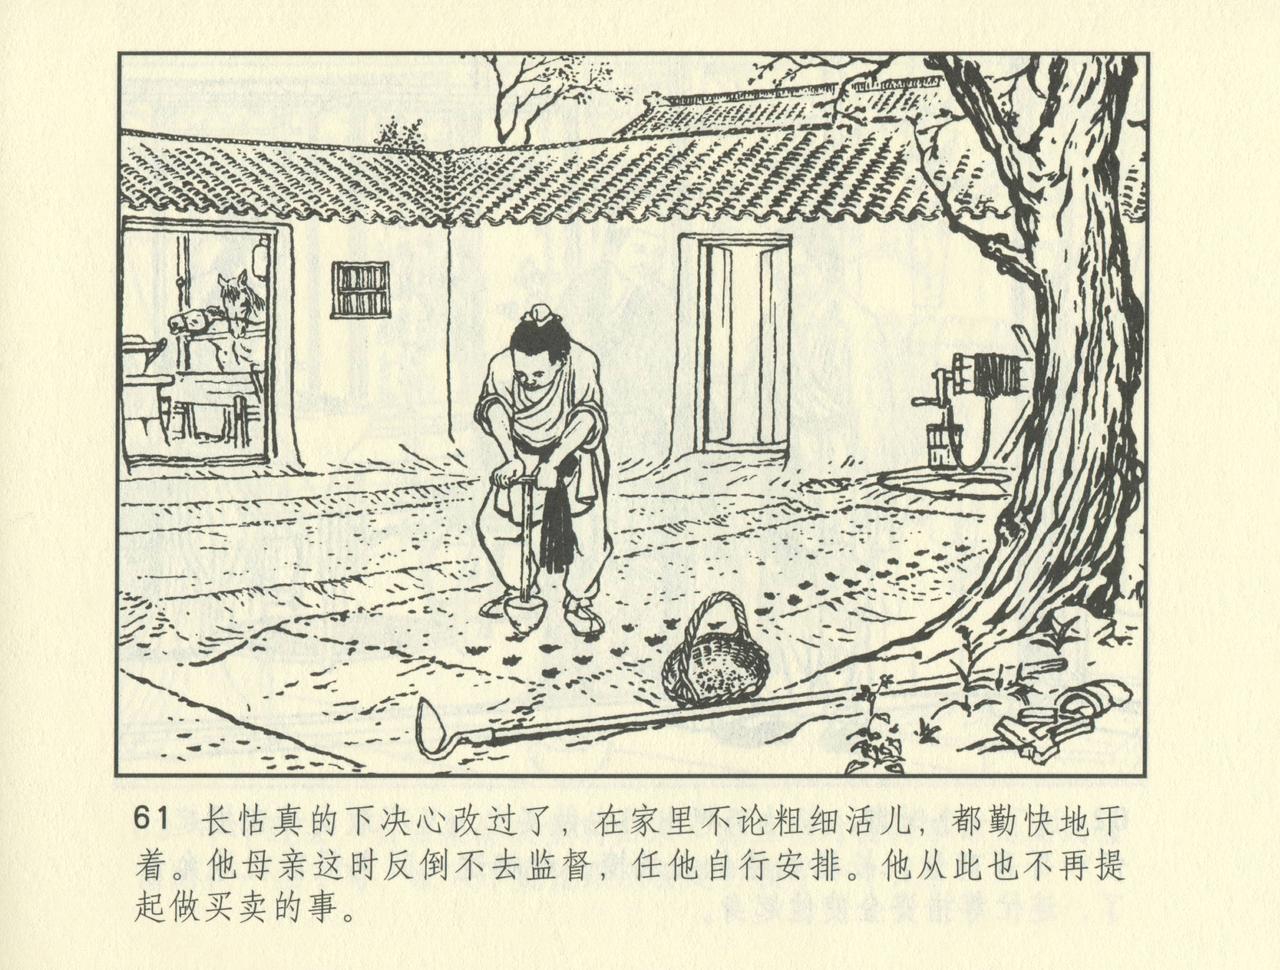 聊斋志异 张玮等绘 天津人民美术出版社 卷二十一 ~ 三十 533